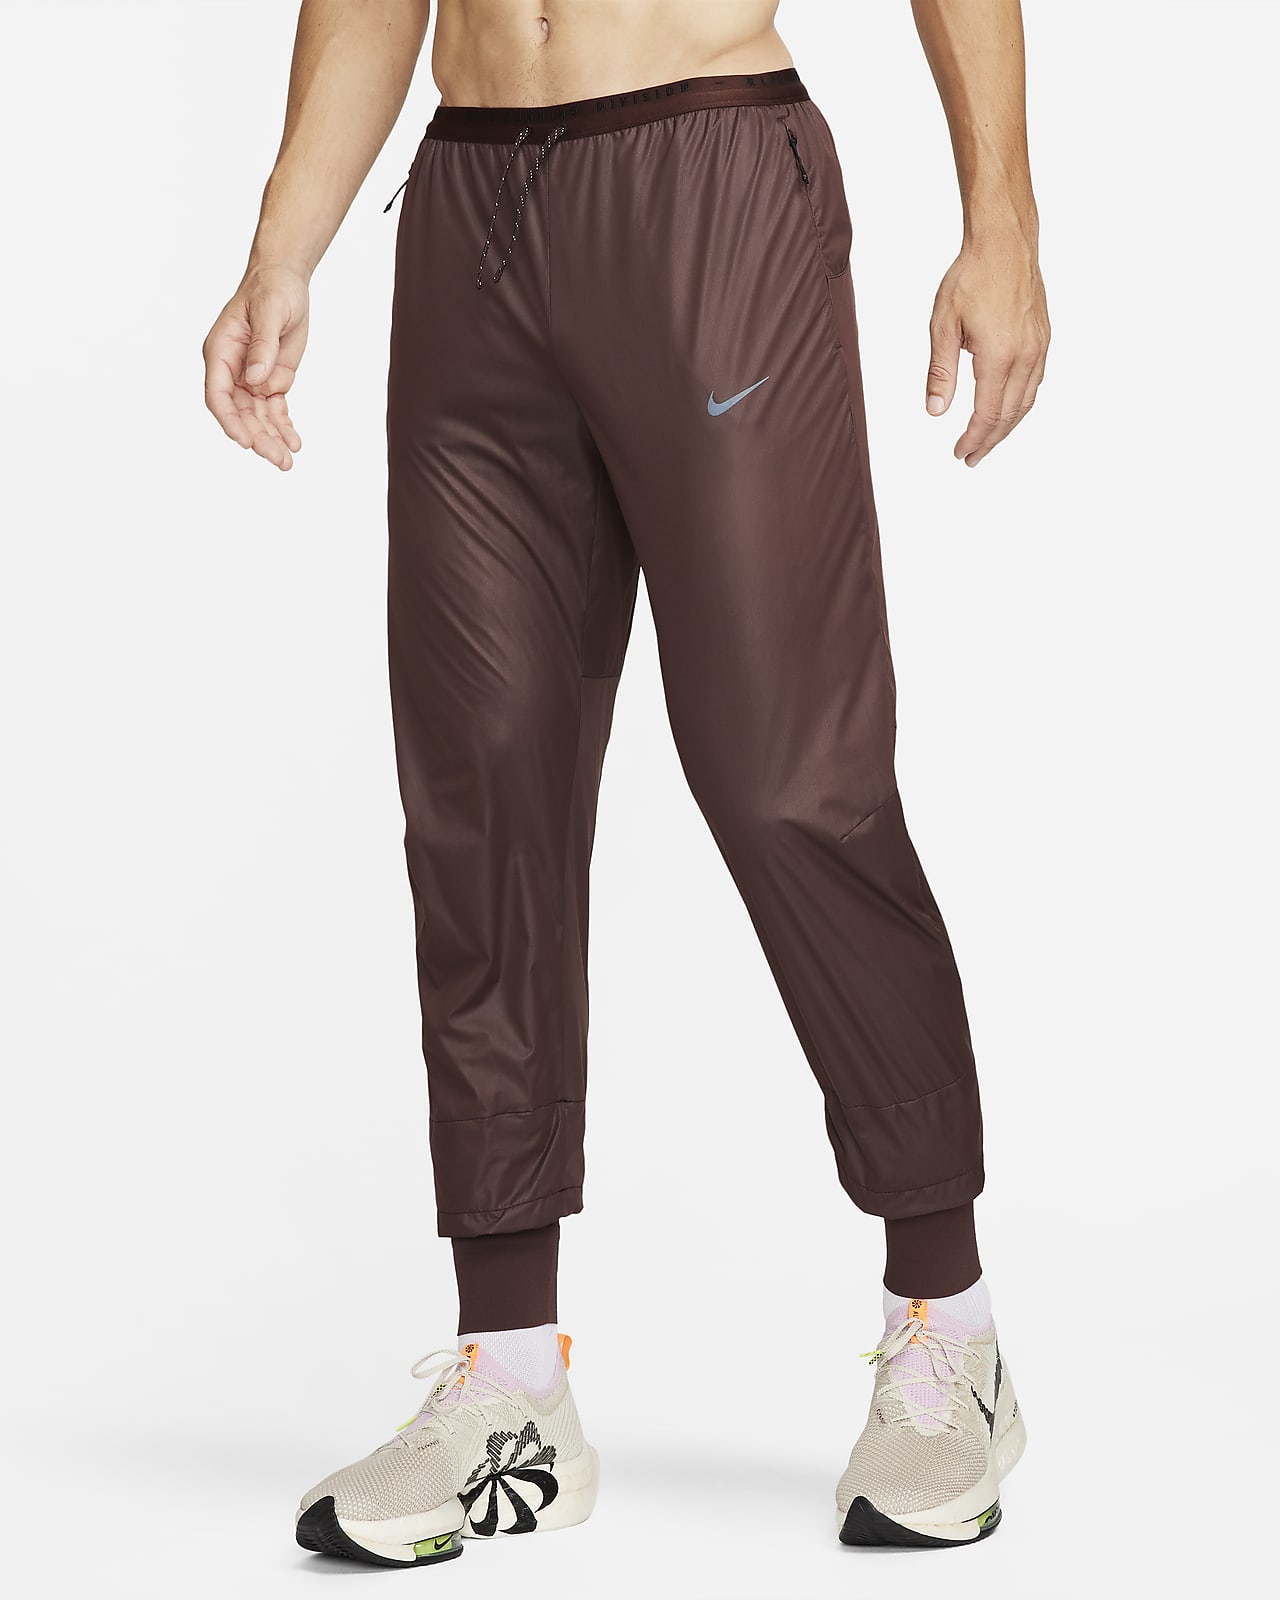 Ανδρικό παντελόνι Storm-FIT για τρέξιμο Nike Running Division Phenom